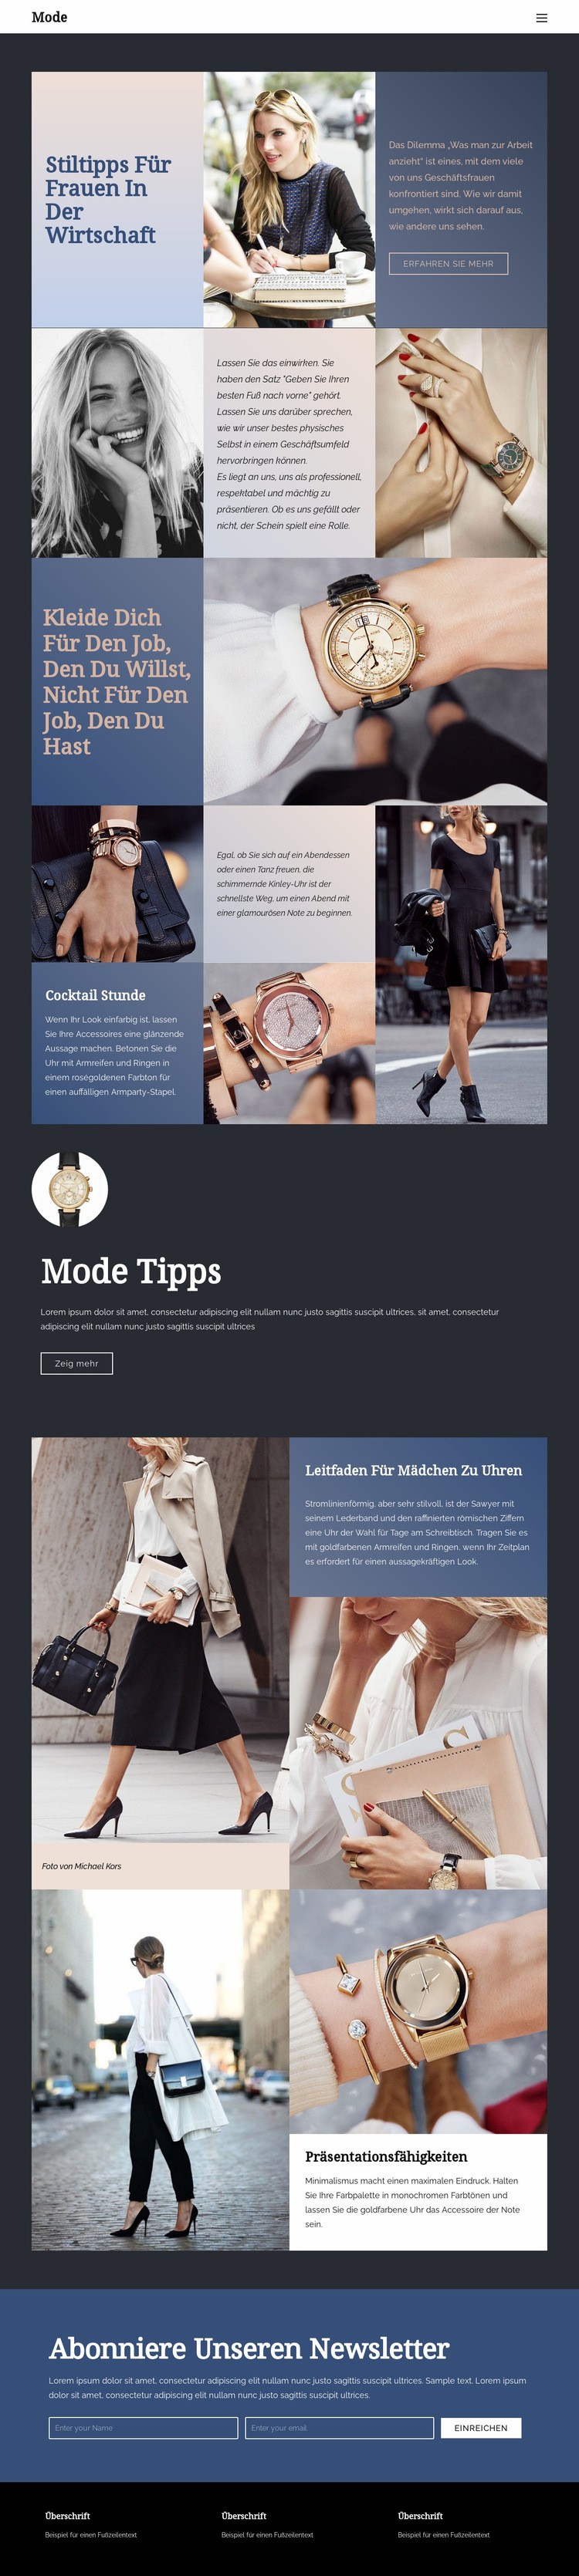 Tipps zum Erfolg in der Mode Website design